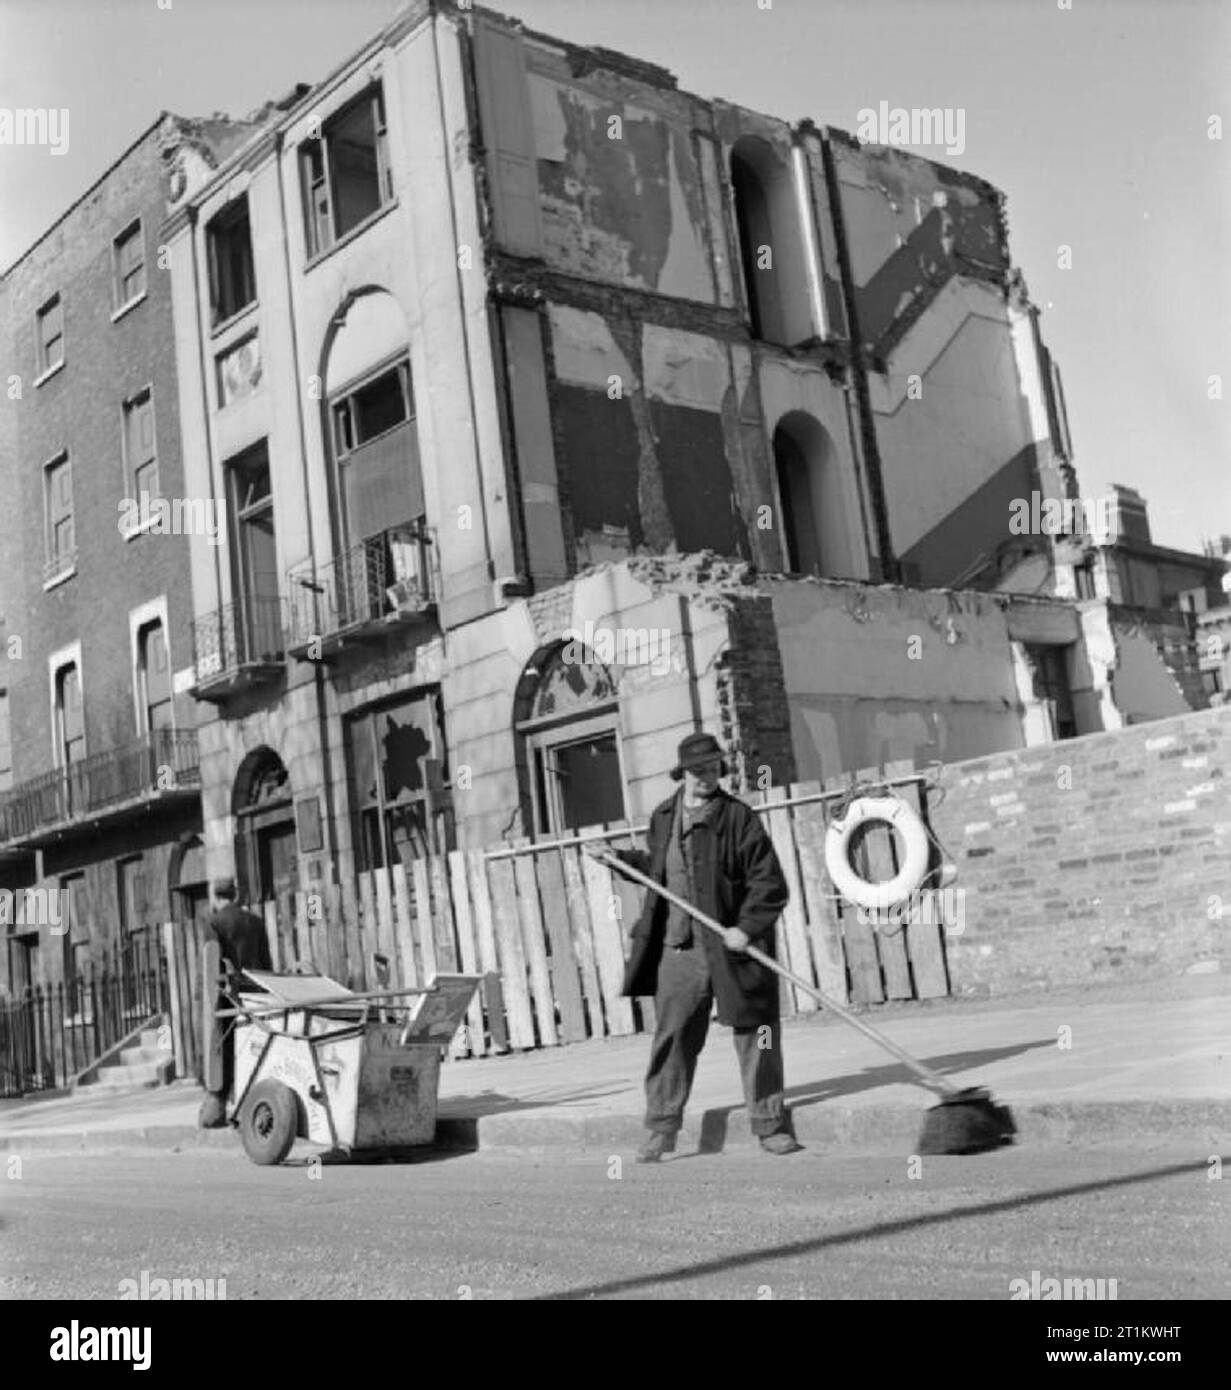 Le nettoyage des rues de la femme- Brigade ramasseurs au travail féminin, Londres, 1942, Mme G Warren De La Rue des Femmes de St Pancras Brigade de nettoyage utilise un grand balai pour balayer la route. Elle est le brossage dans la gouttière à côté de la bordure, avec son dustcart à proximité. Les bâtiments derrière elle montrent des signes d'être durement touchée par des raids aériens. Selon la légende originale, Mme Warren a 35 ans et "charred' dans les bureaux avant la guerre. La photographie a été prise après une pause pour le petit déjeuner entre 8 et 8 h 30. Banque D'Images